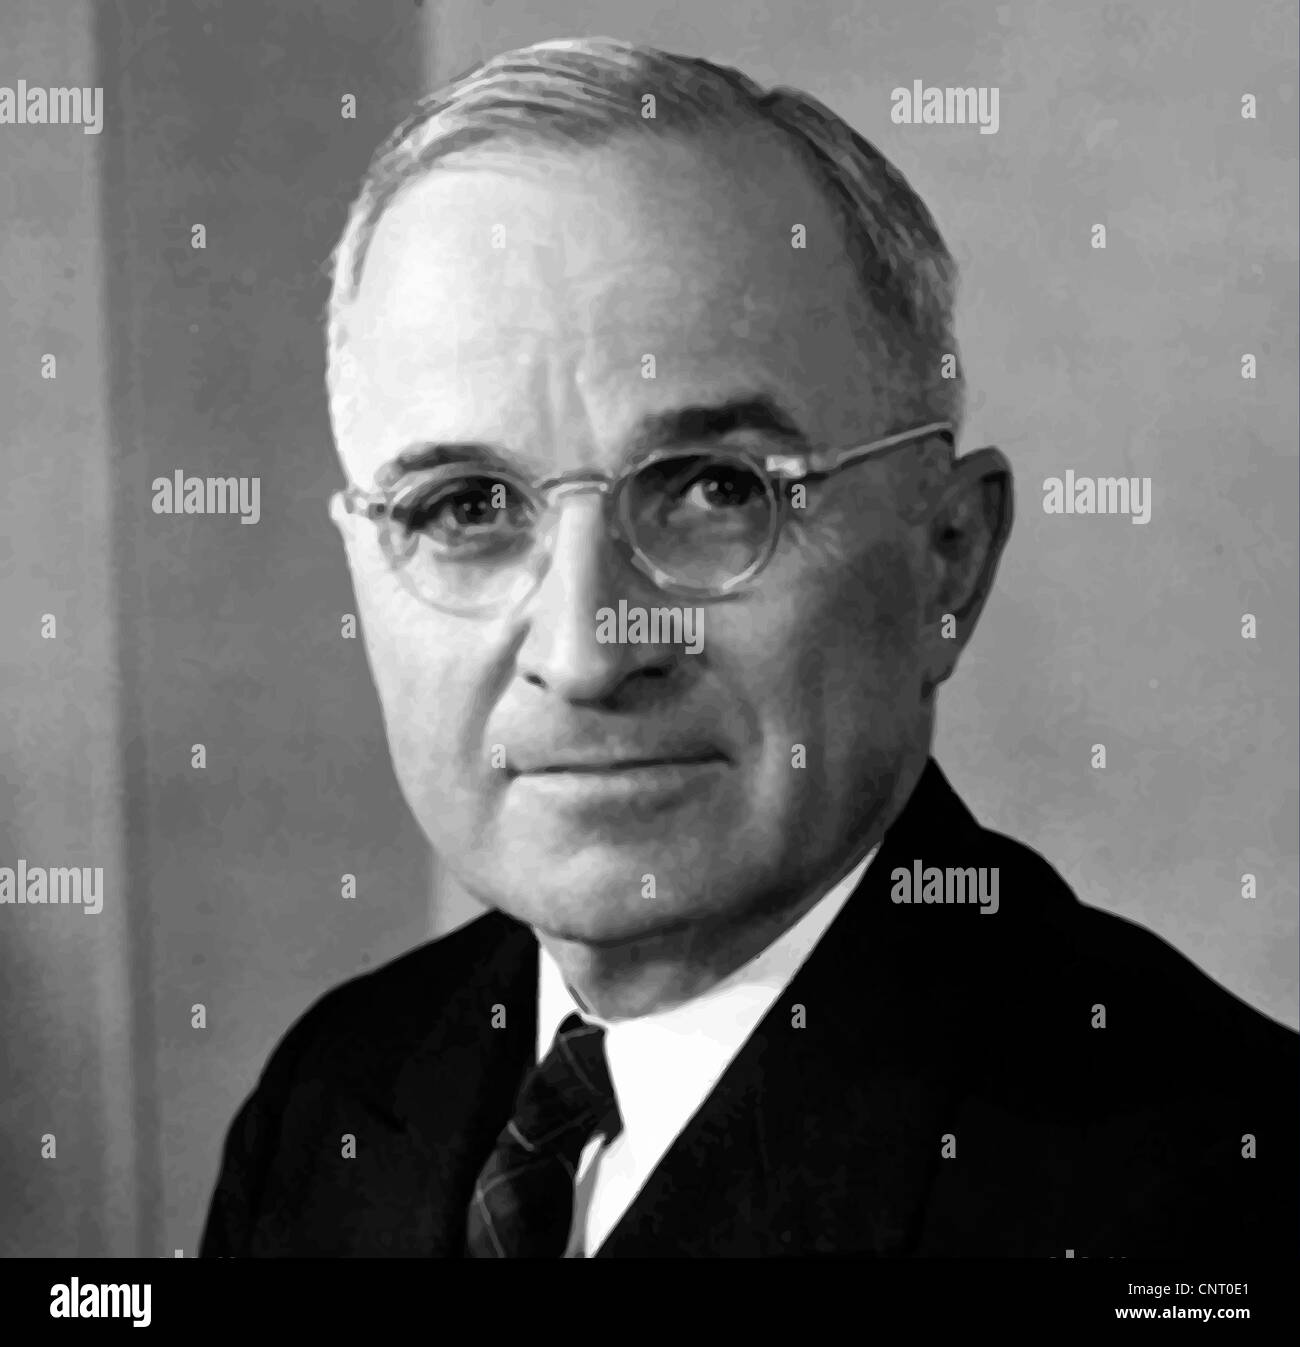 Vecteur restaurés numériquement portrait de Harry S. Truman. Banque D'Images